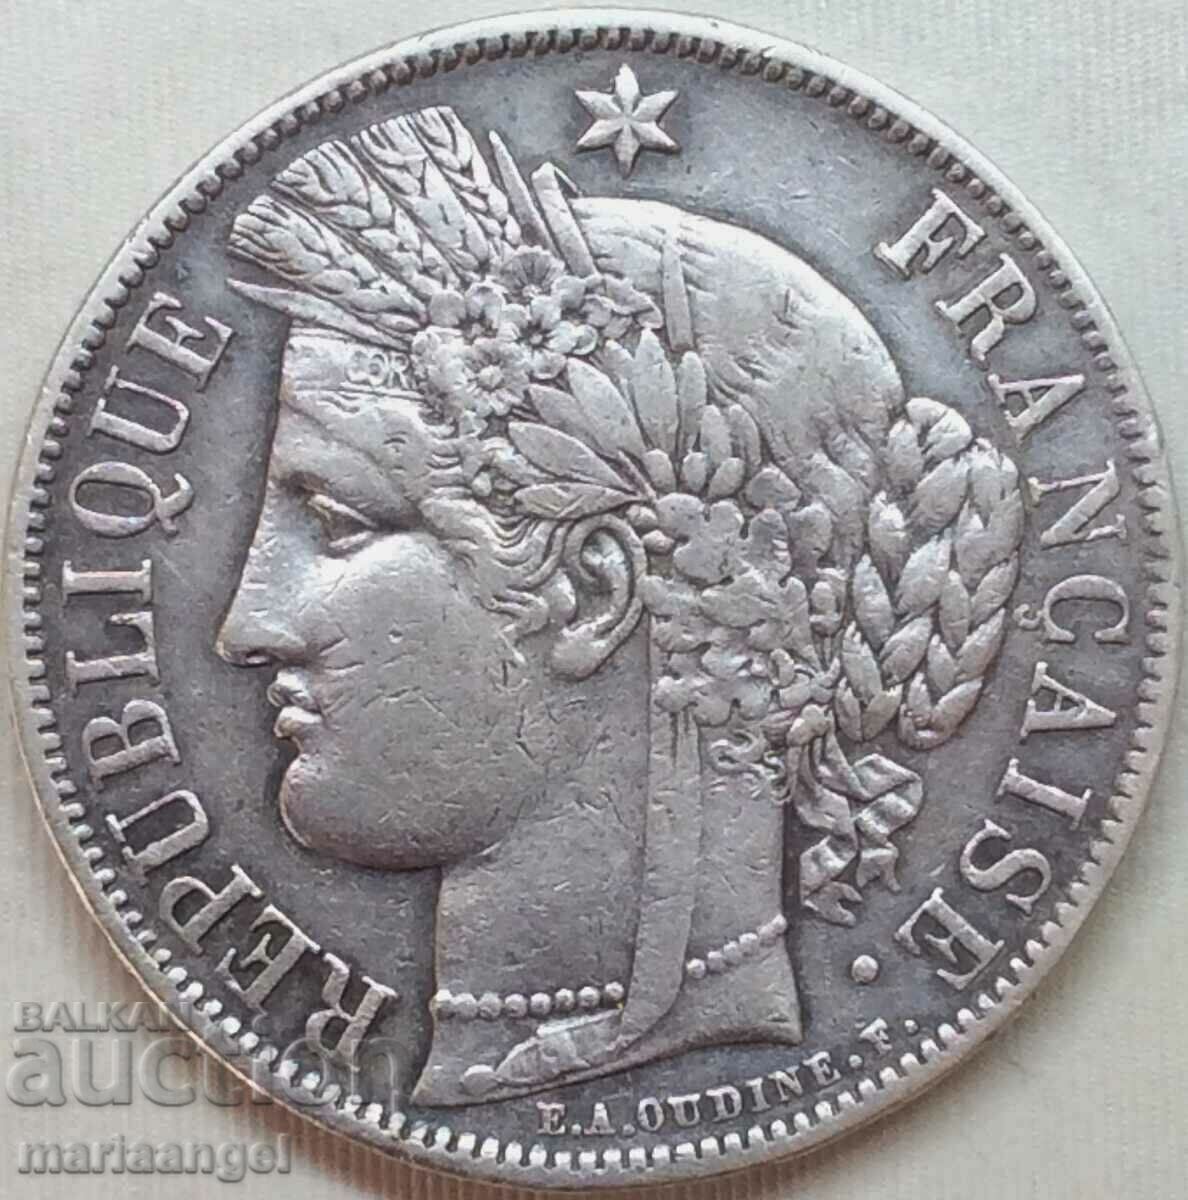 5 francs 1851 France Thaler Ceres 37mm 24.84g silver